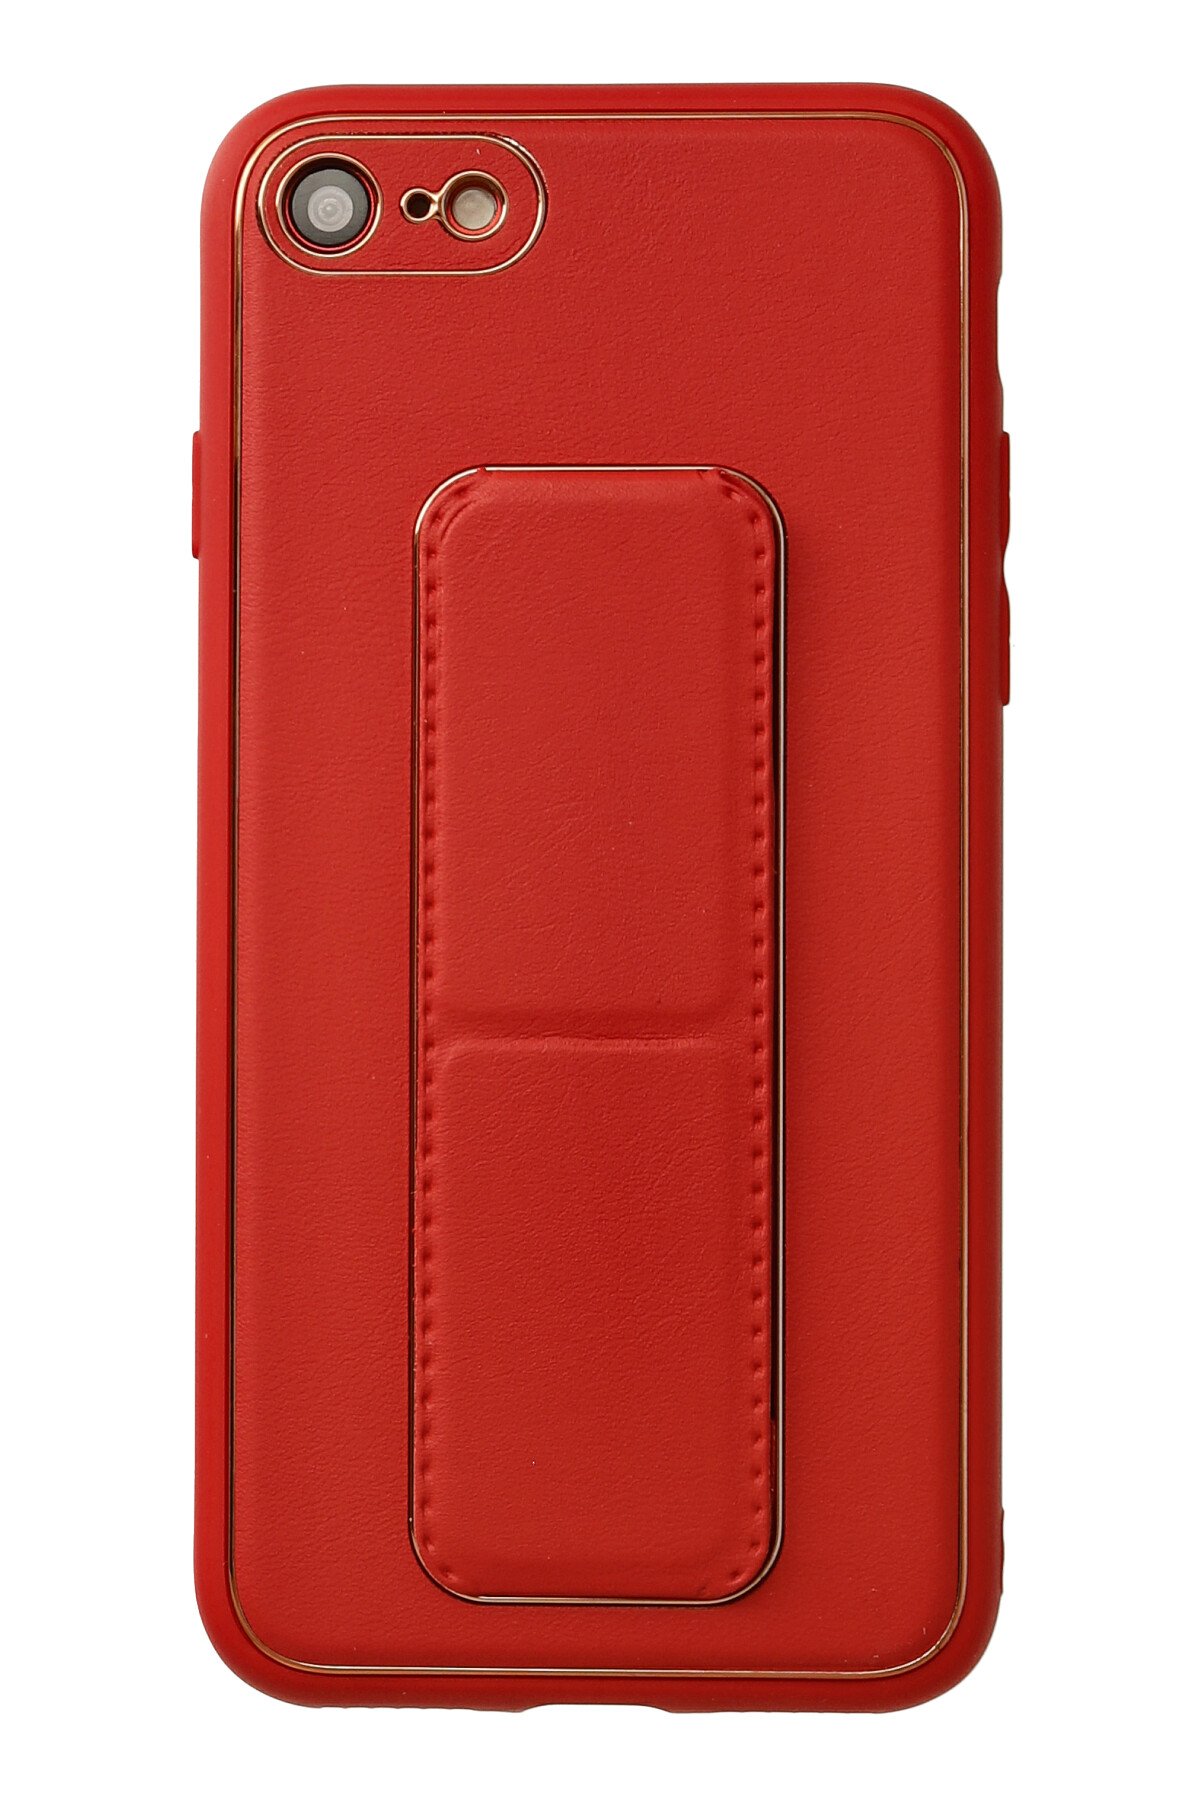 Newface iPhone 7 Kılıf Zuma Kartvizitli Yüzüklü Silikon - Kırmızı